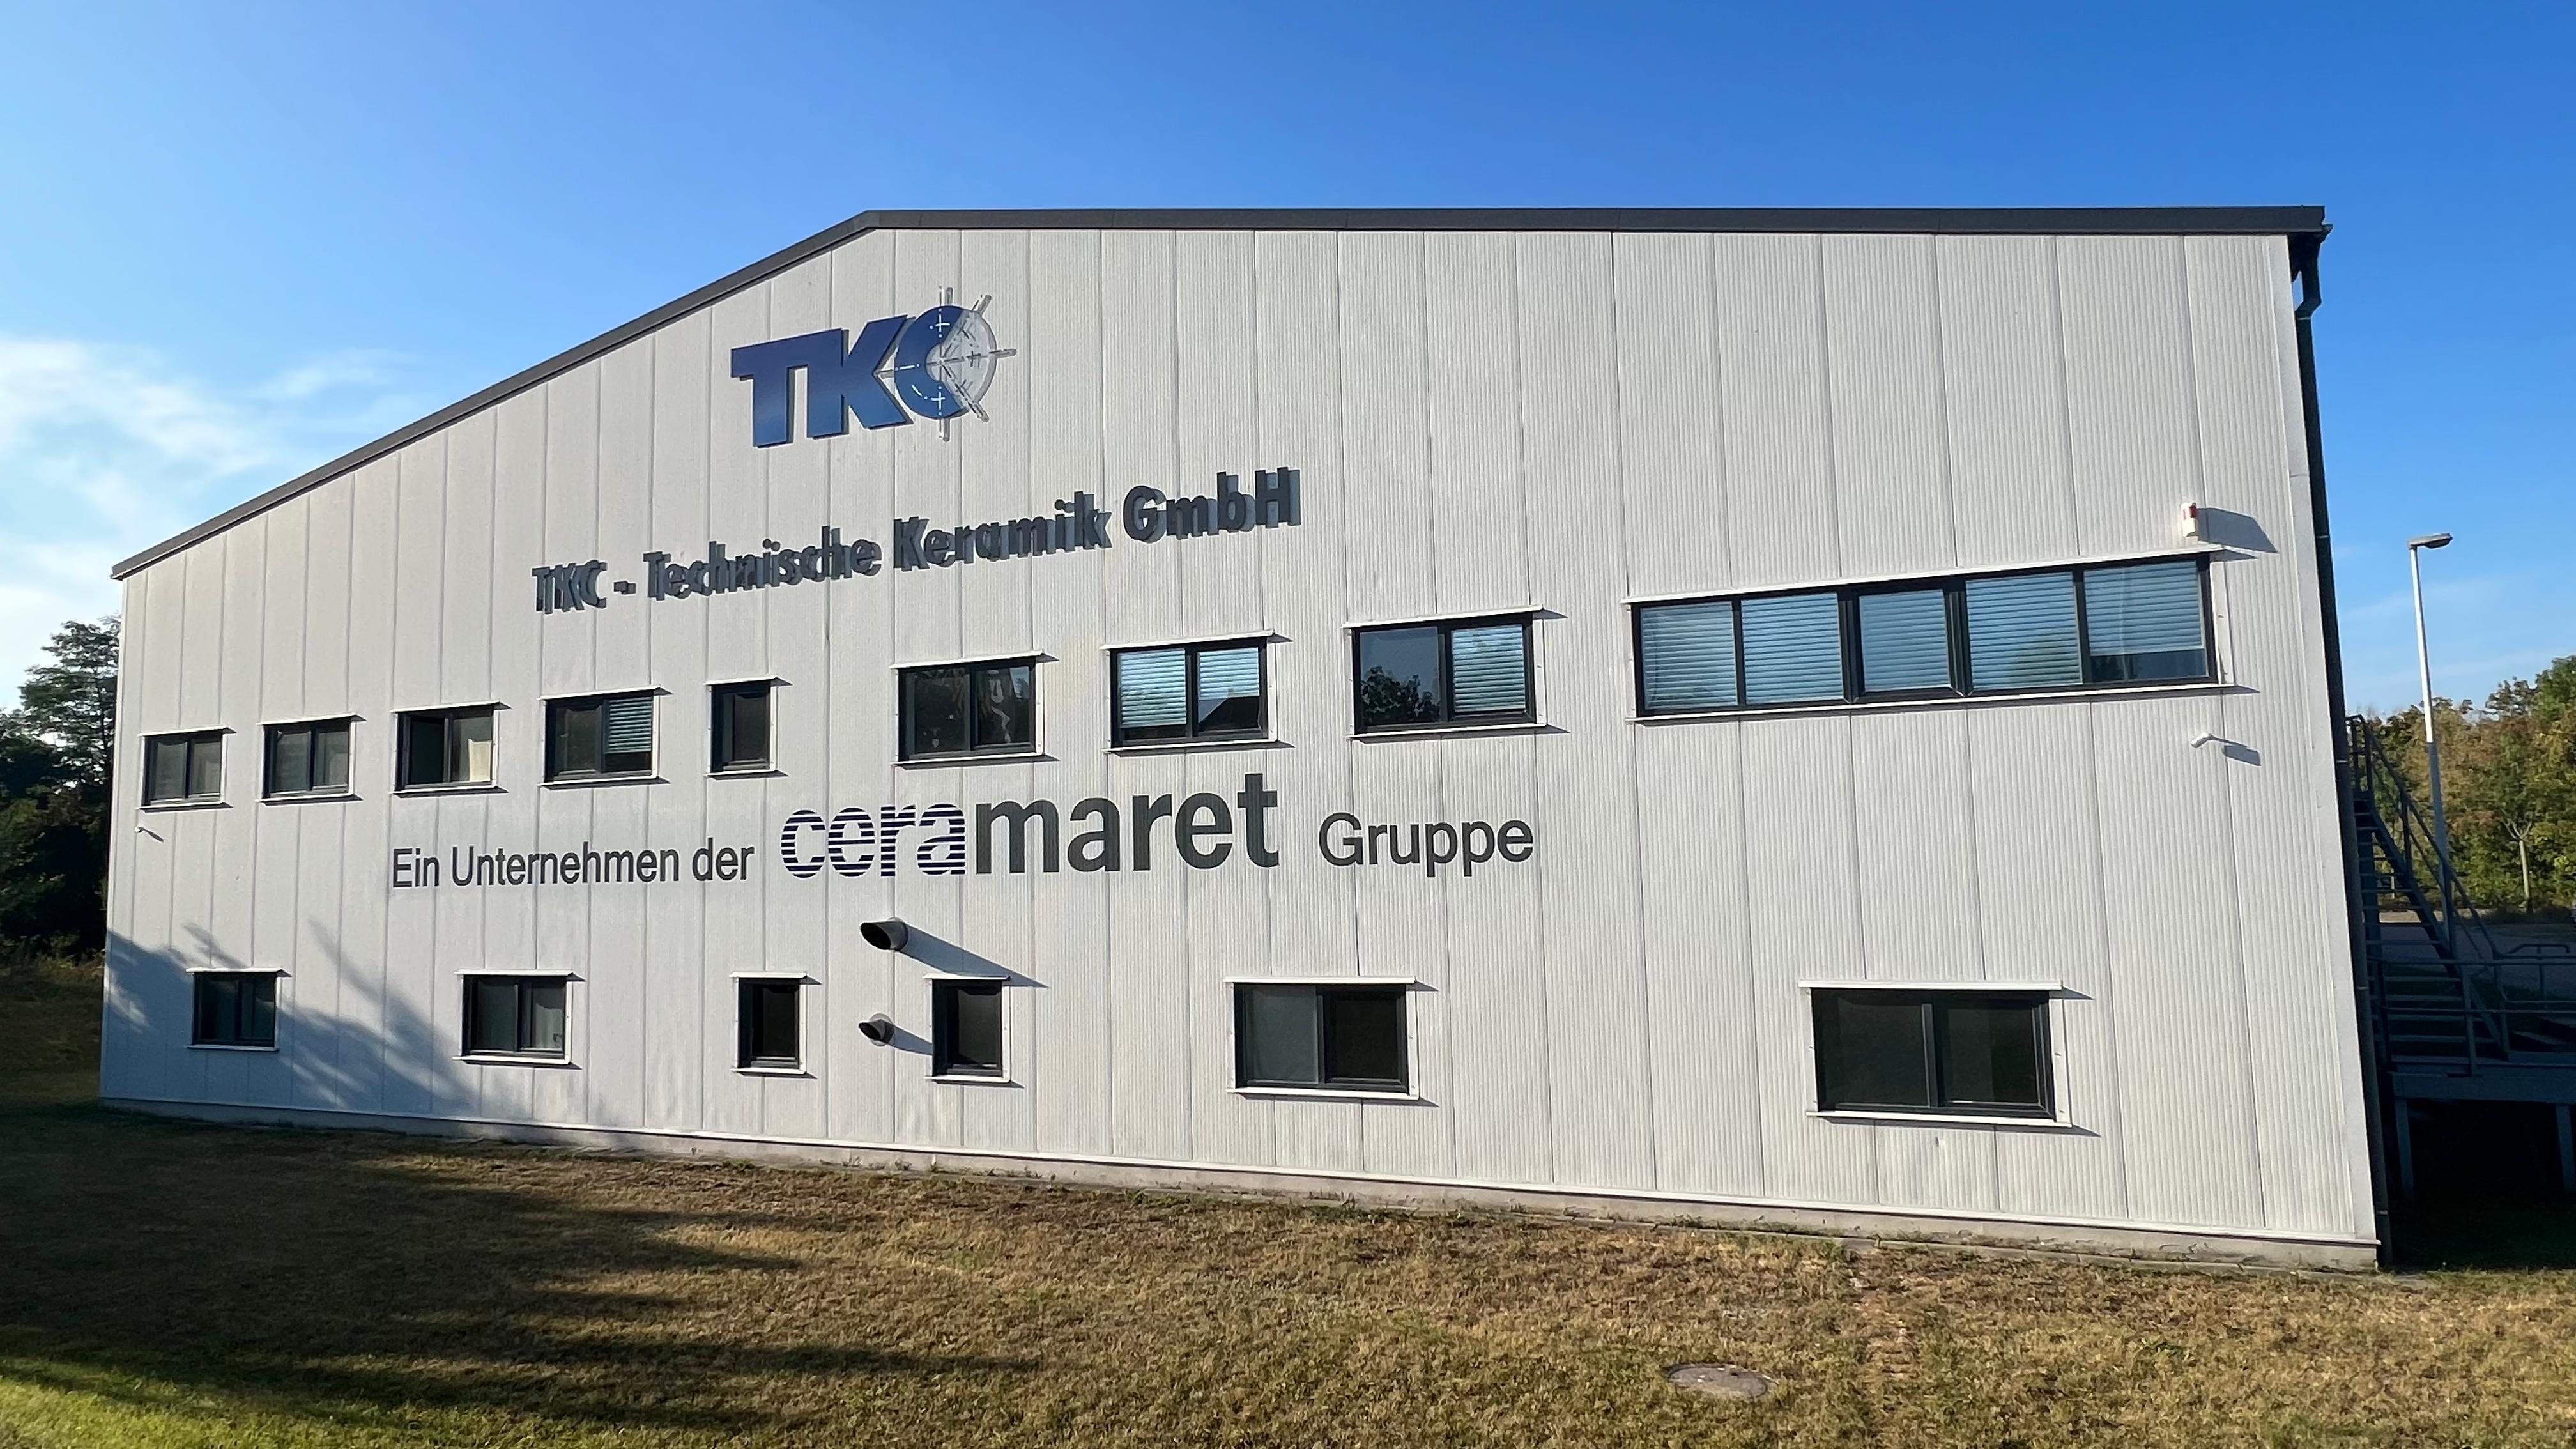 TKC_Ein Unternehmen der CERAMARET Gruppe